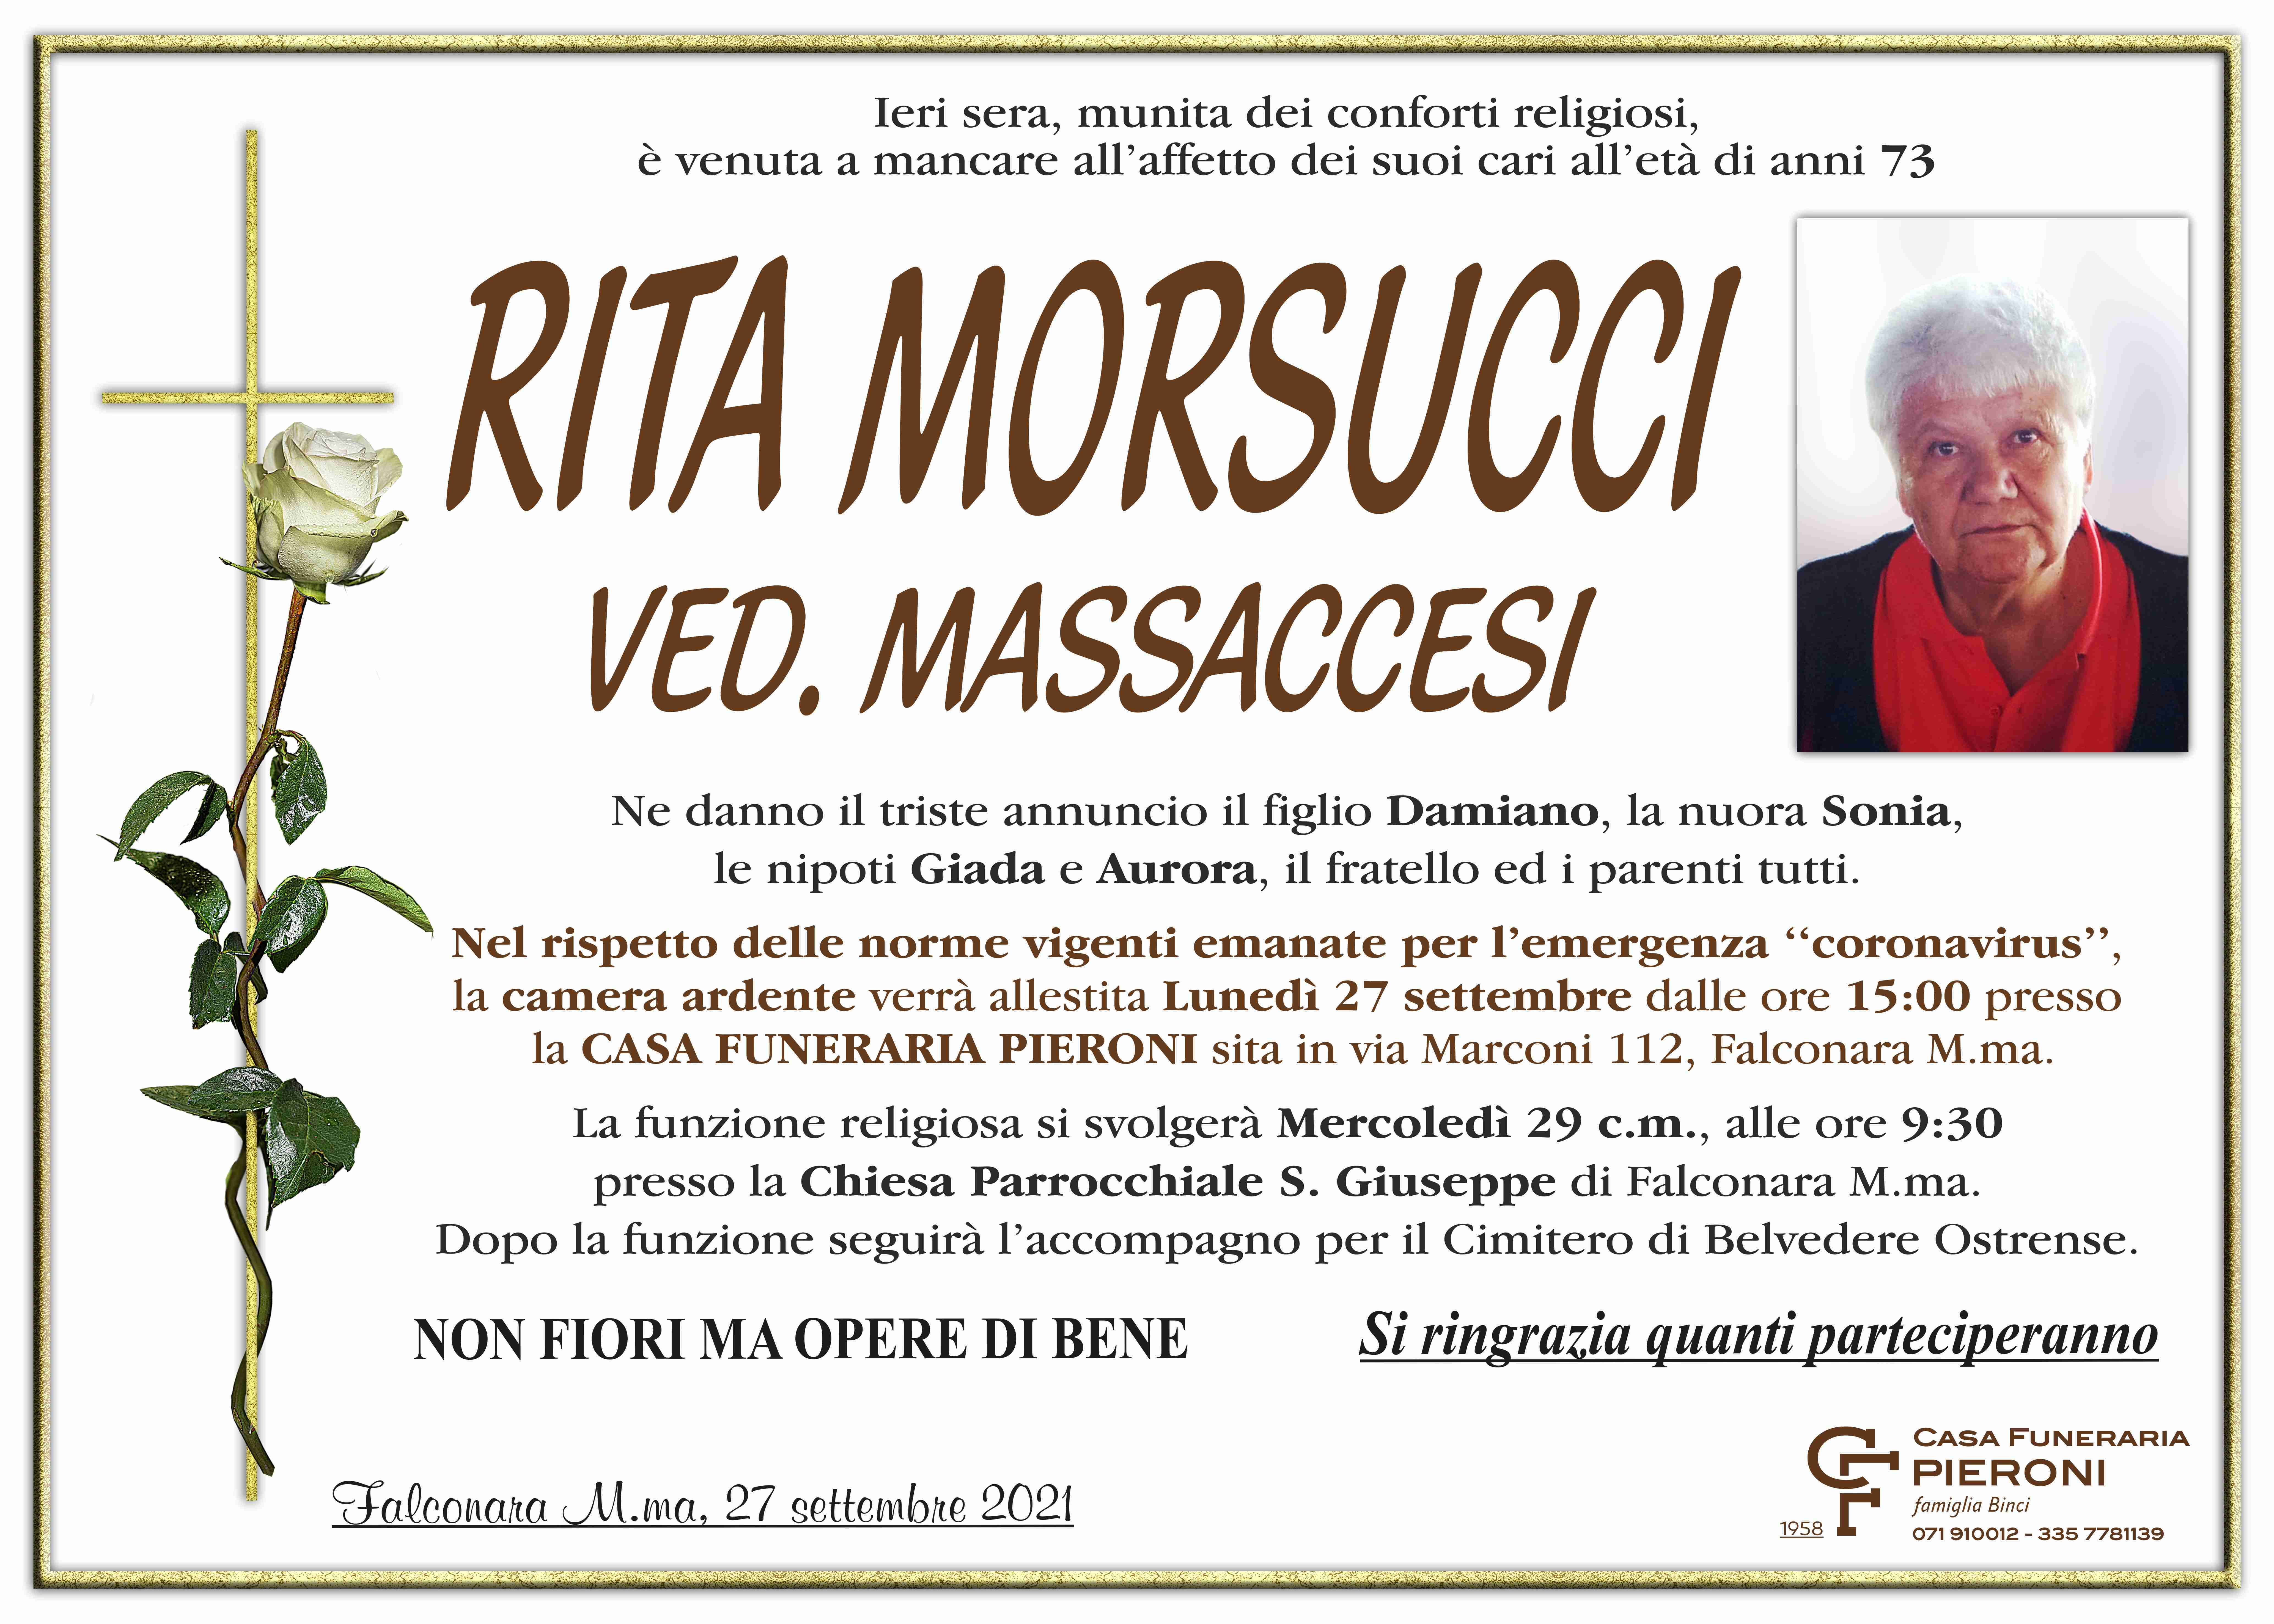 Rita Morsucci